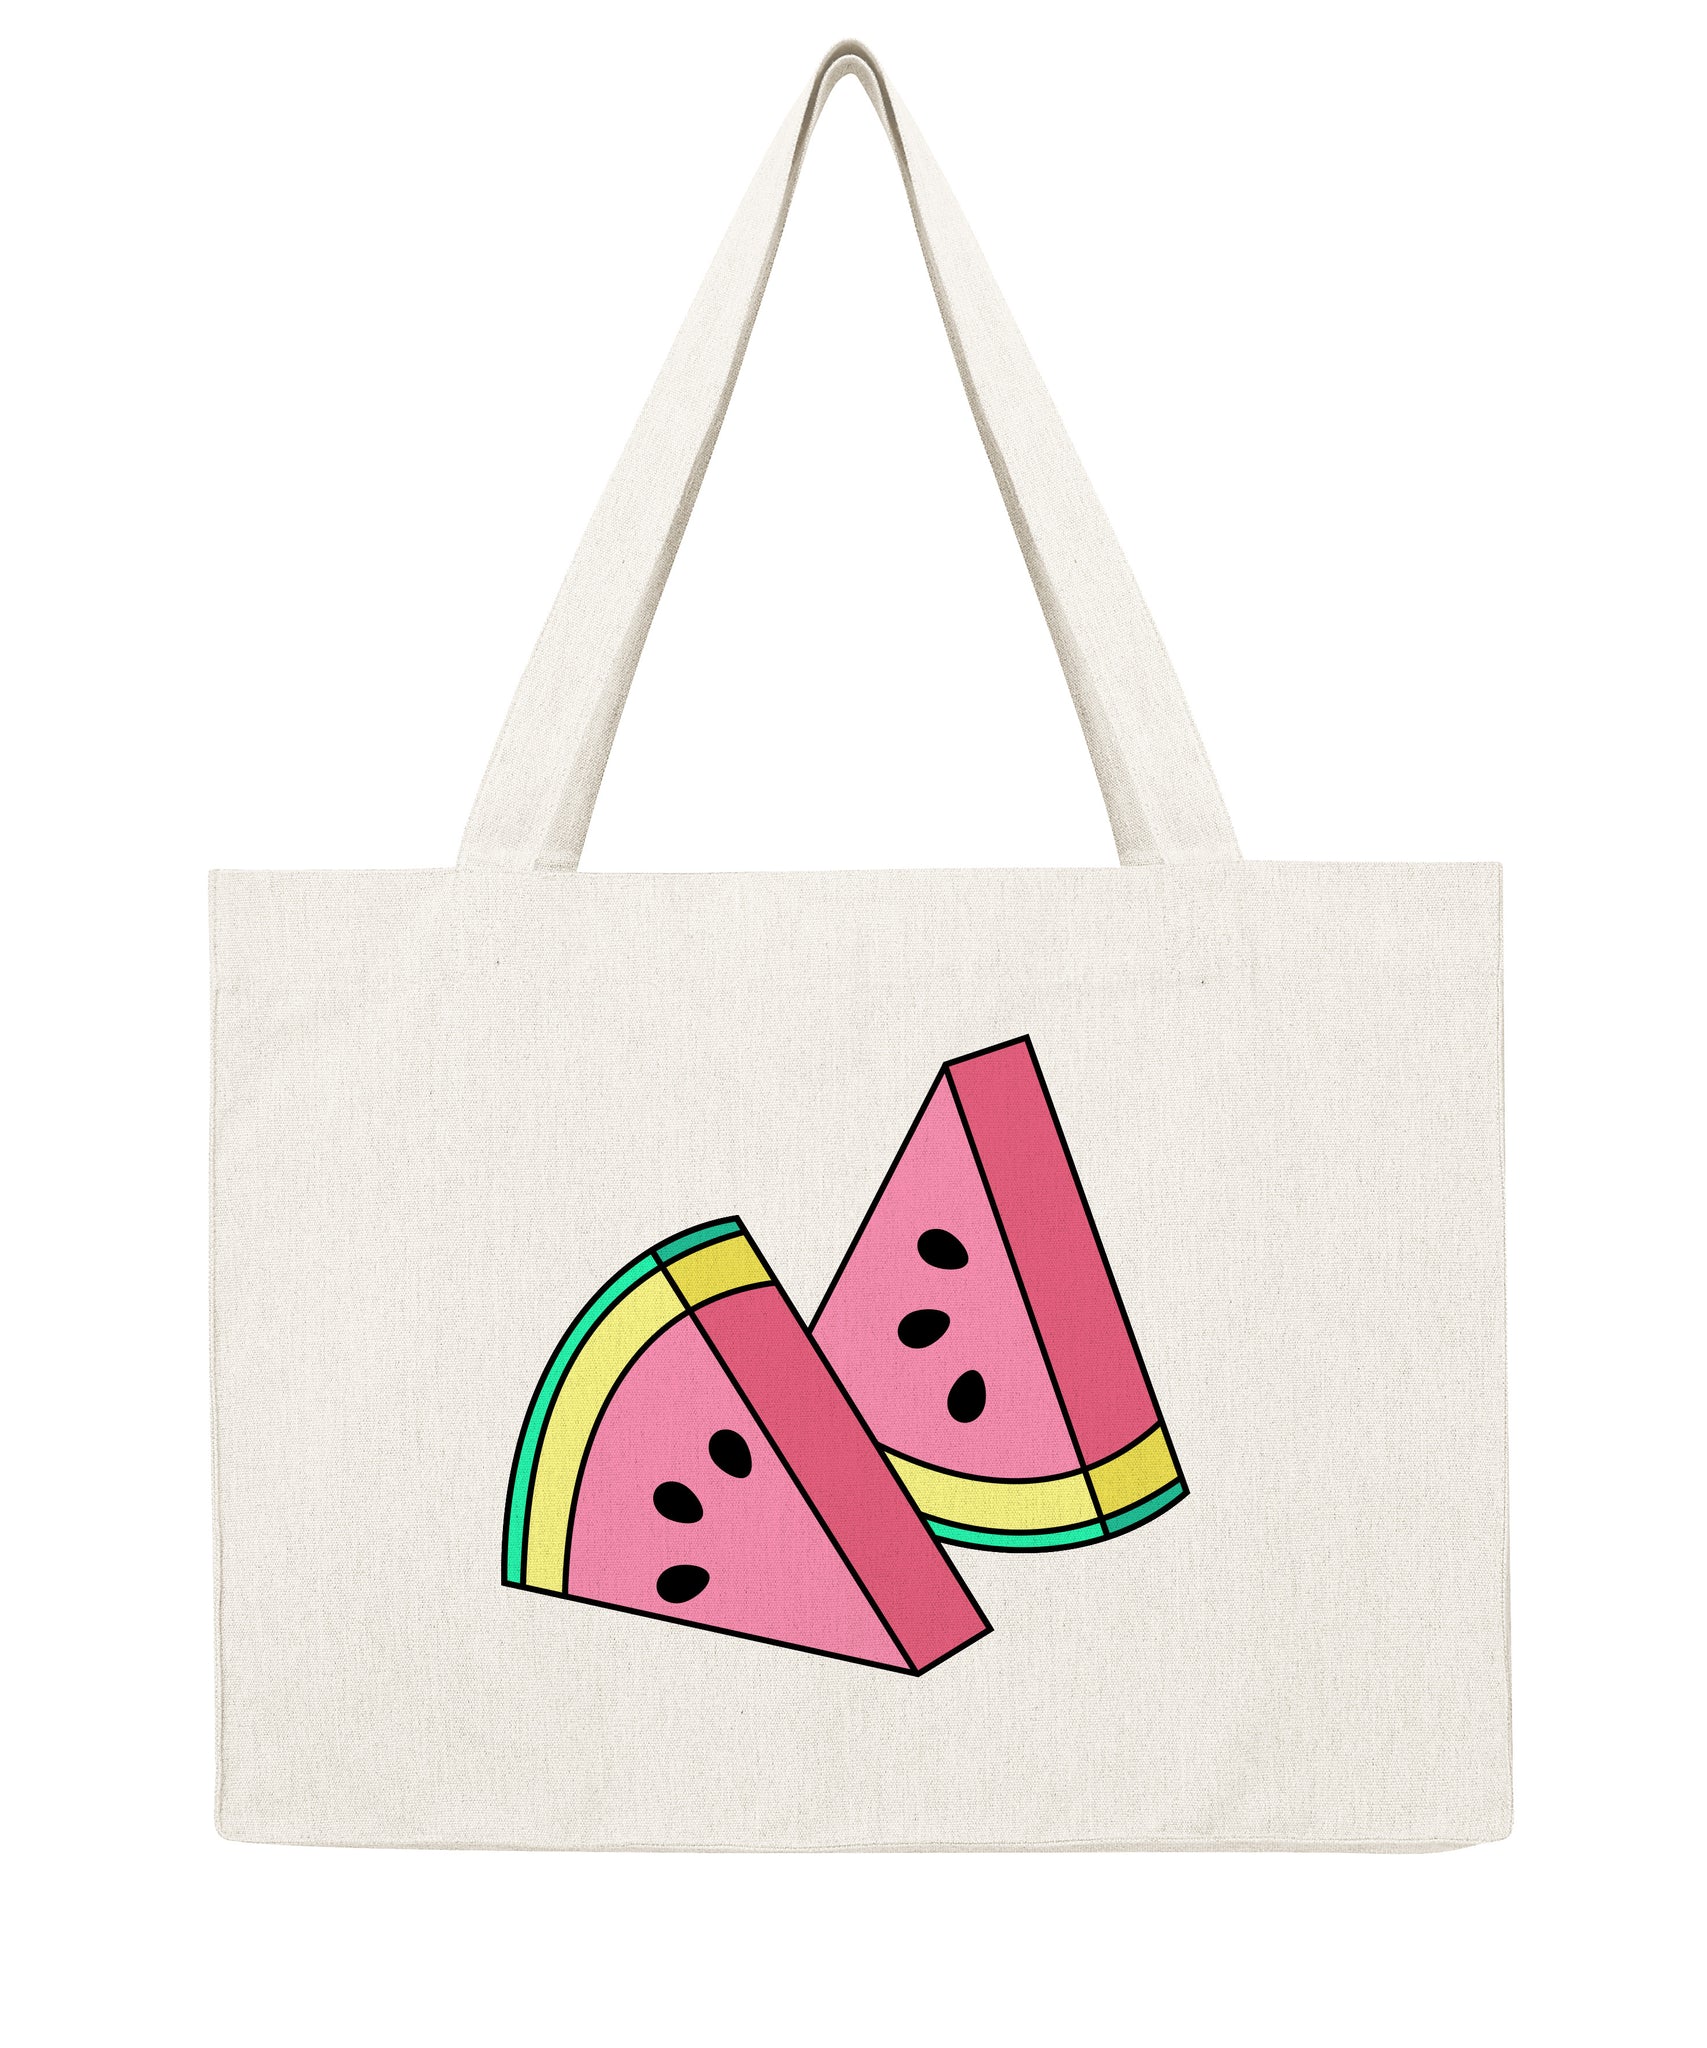 Tranches de pastèque - Shopping bag-Sacs-Atelier Amelot